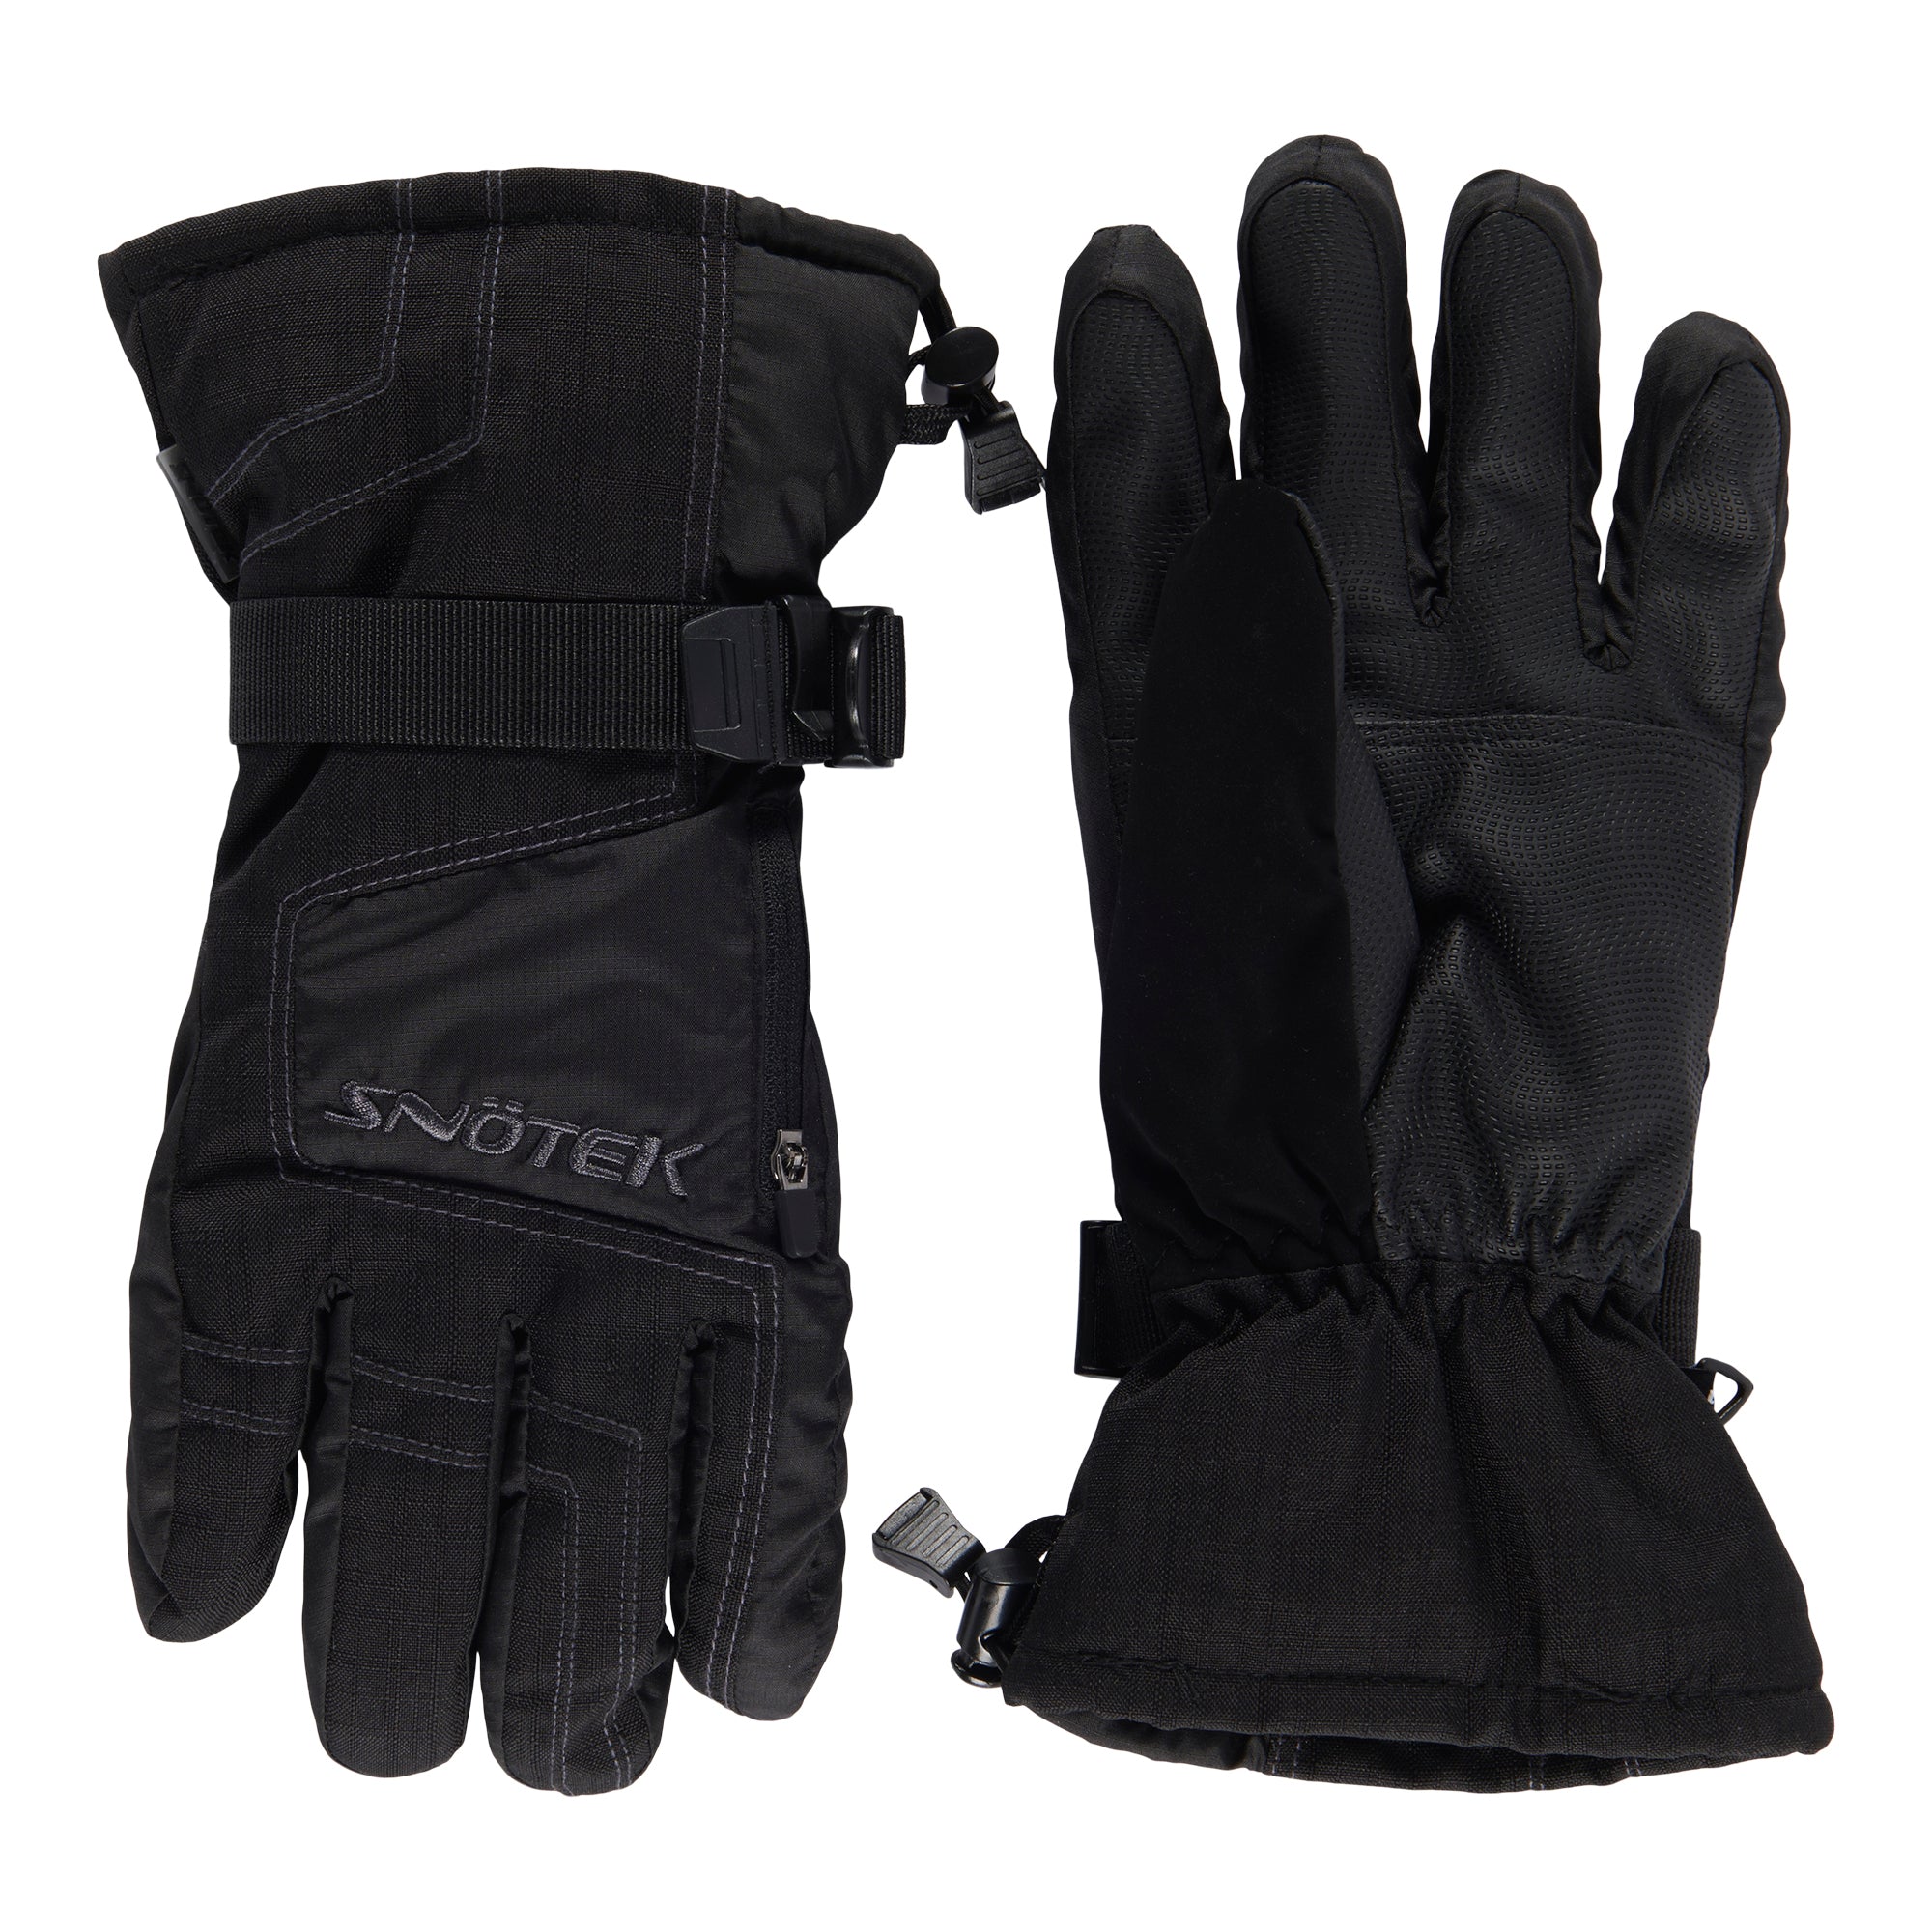 Snötek Men's Ski Gloves